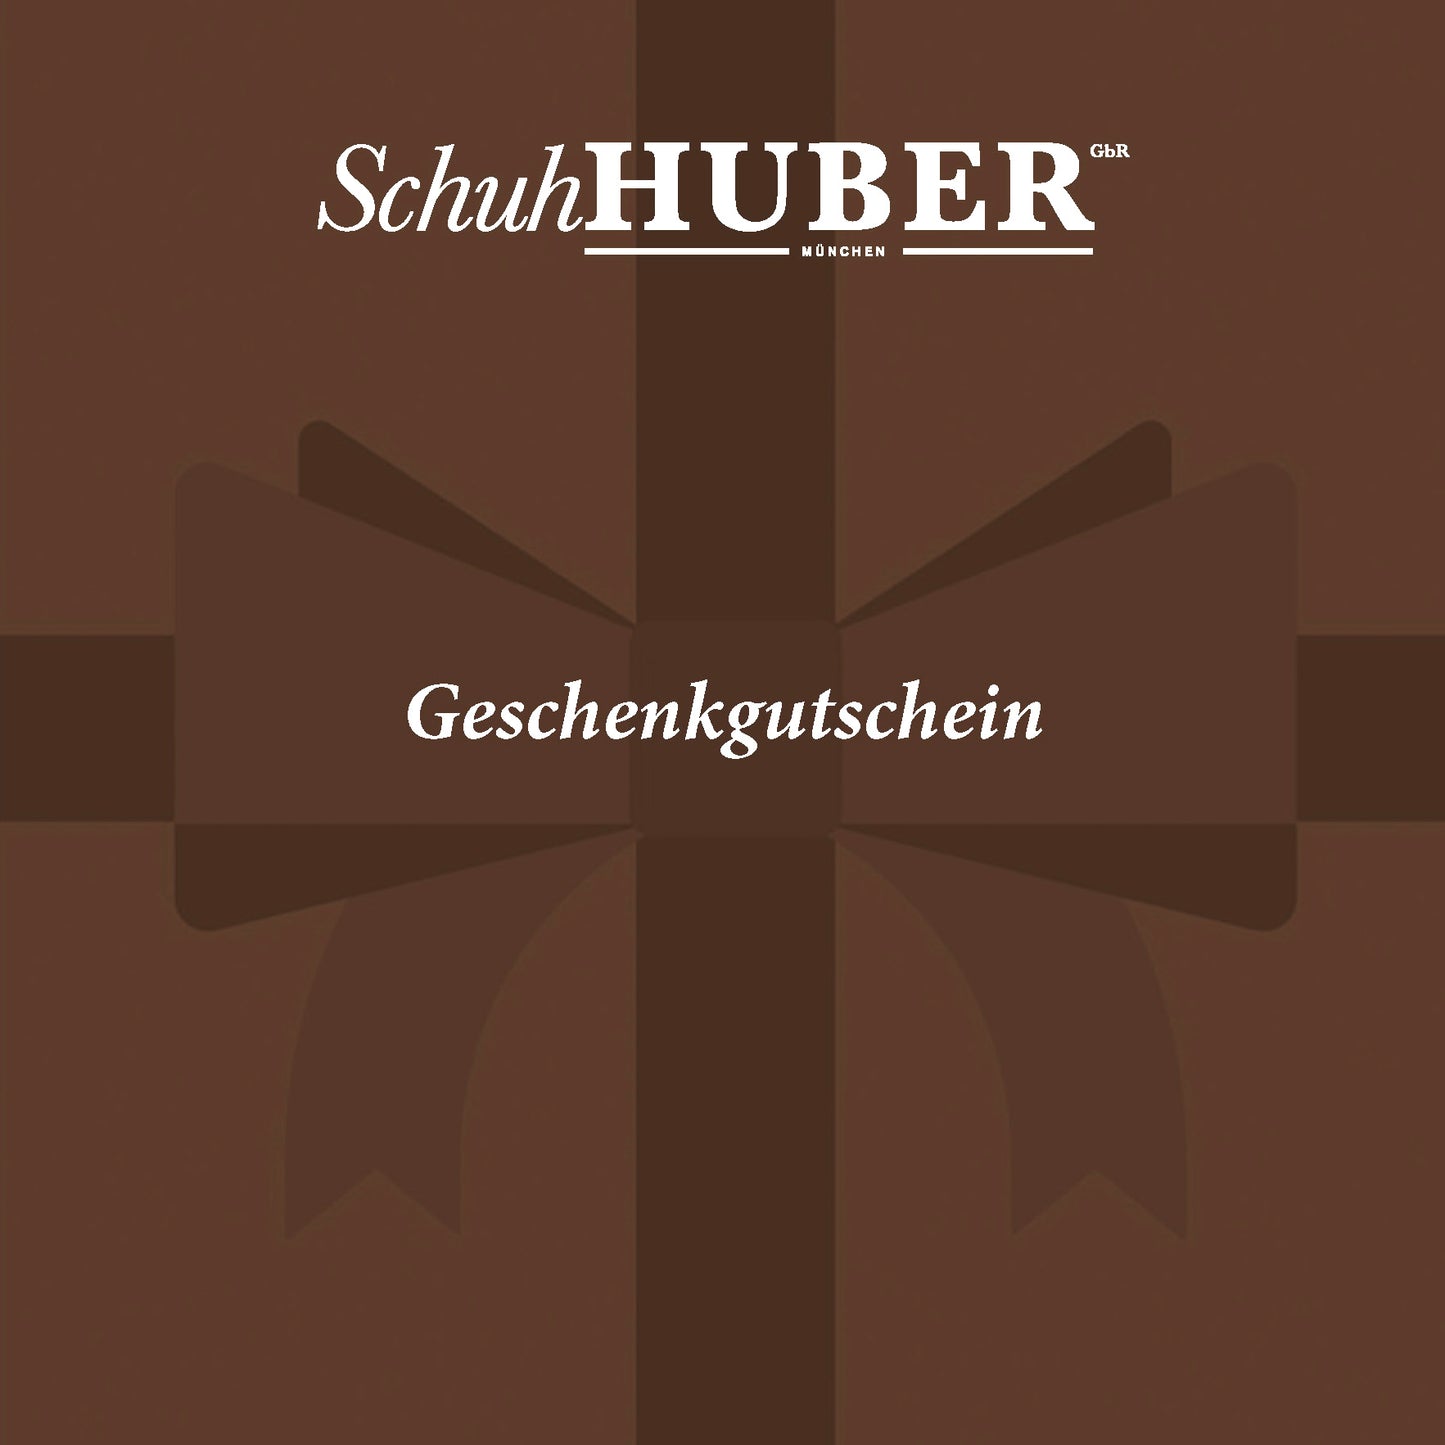 Schuh-Huber Geschenkgutschein